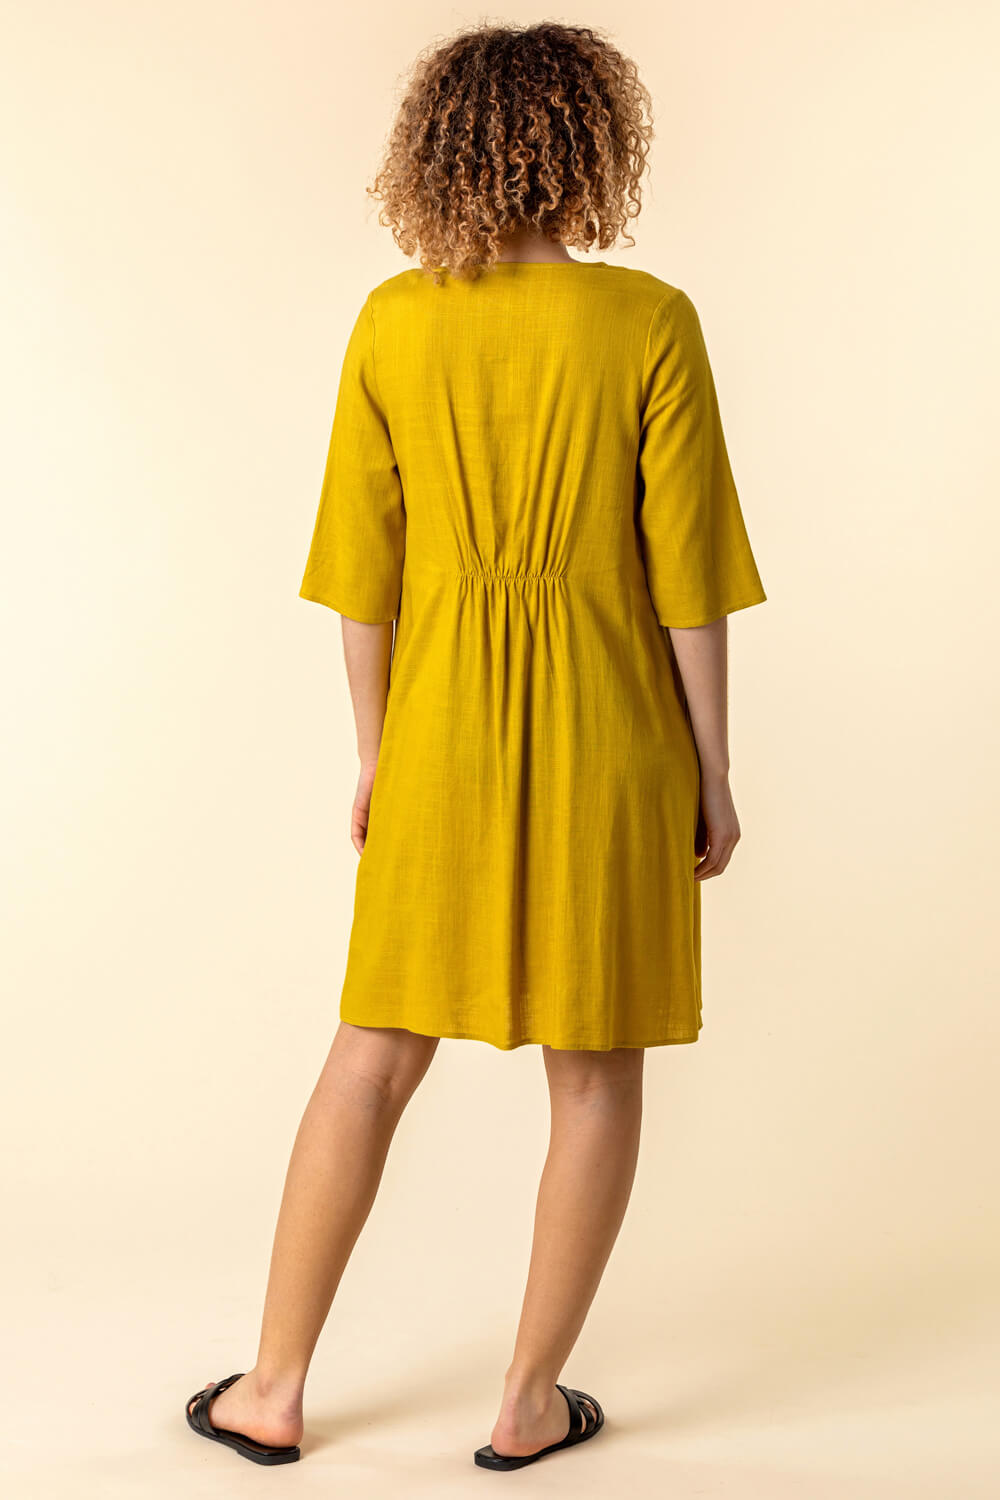 Amber Pocket Detail Swing Dress, Image 2 of 4